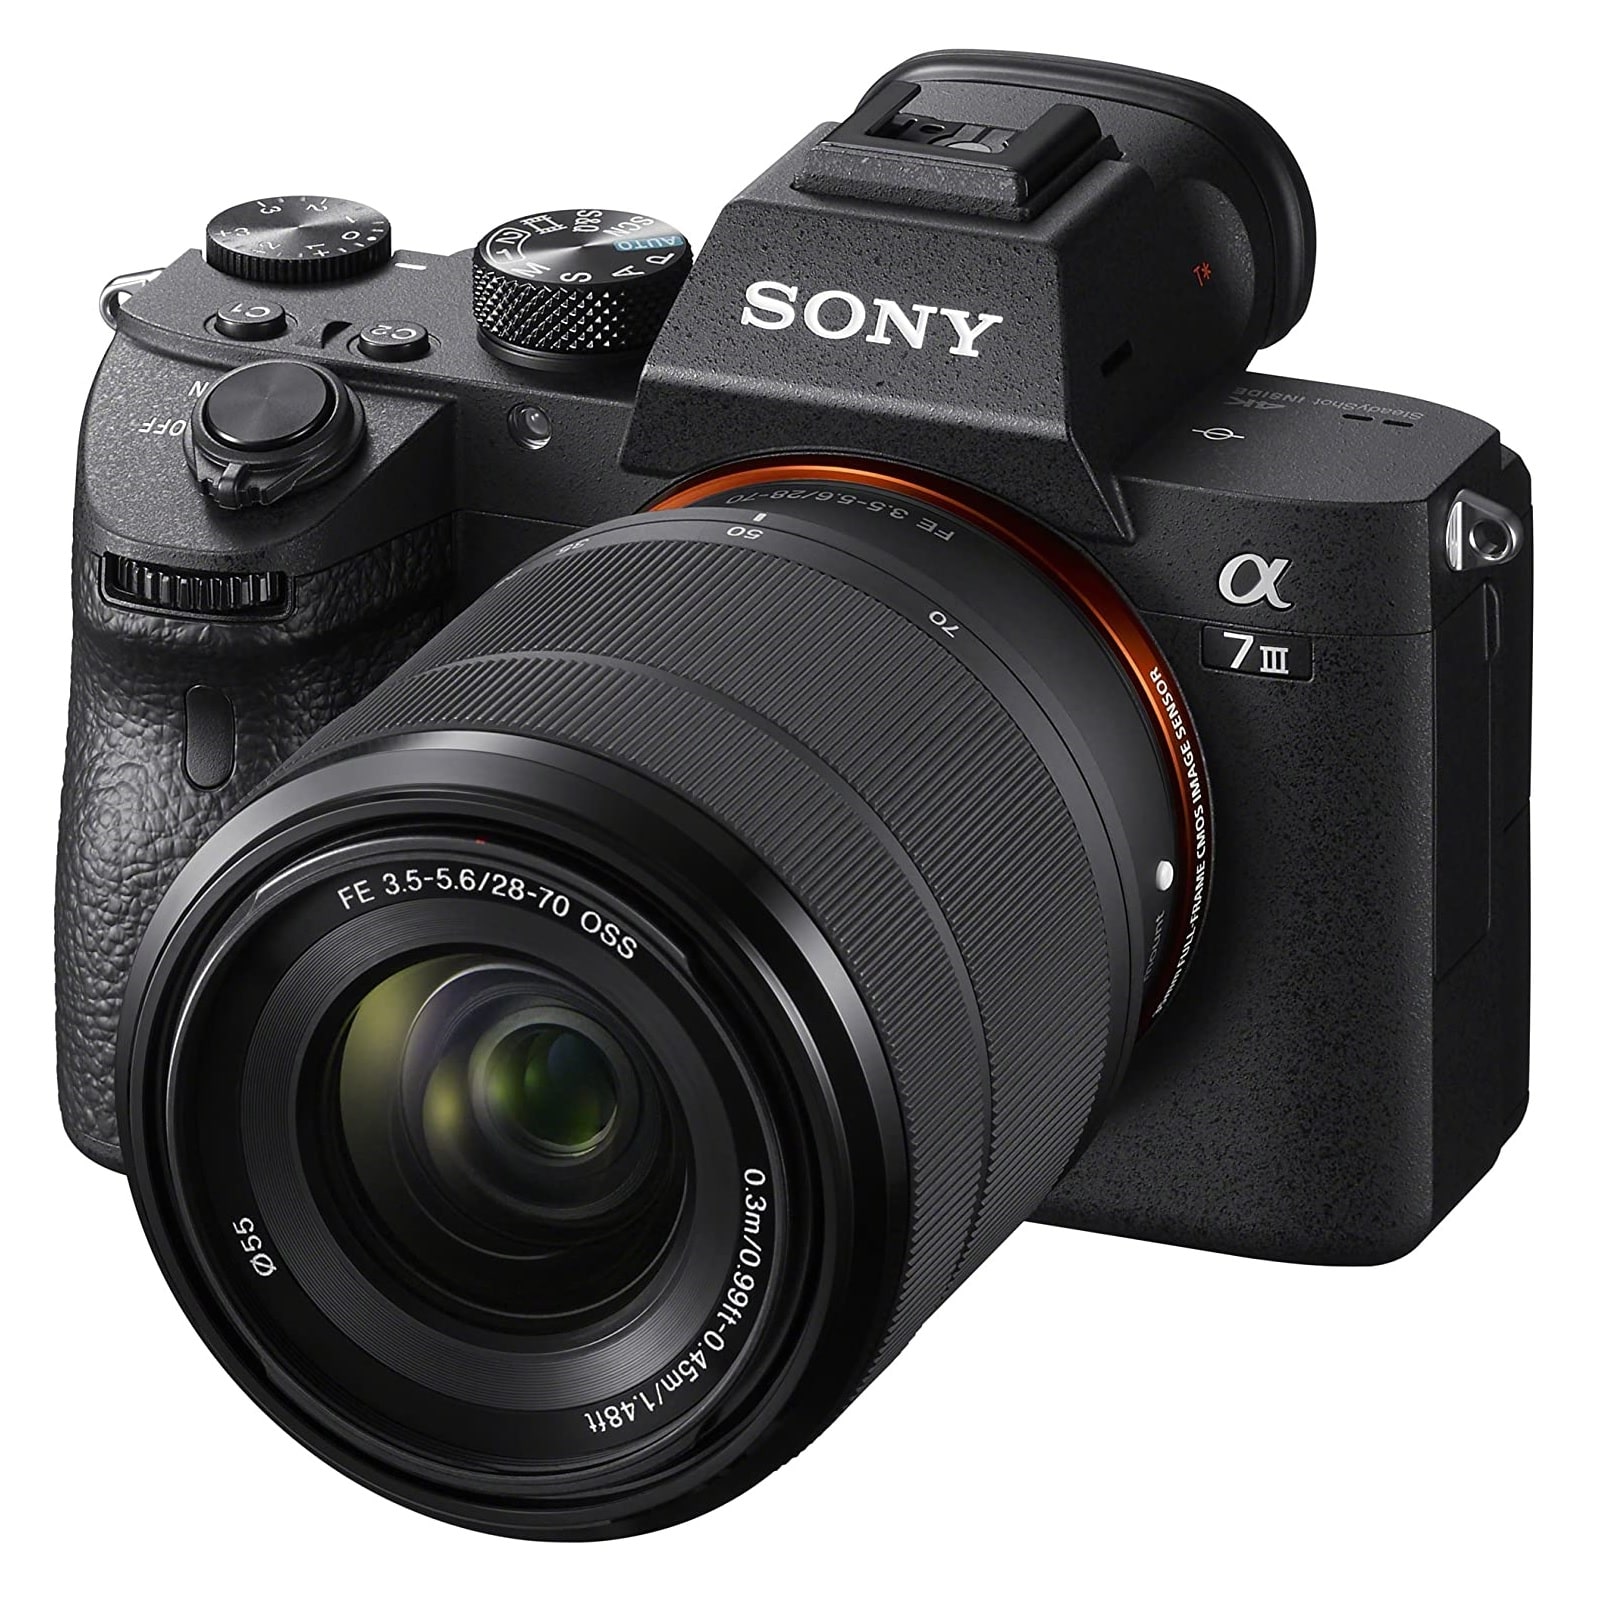 Беззеркальный фотоаппарат Sony Alpha A7 Mark III, 28-70mm, f/3.5-5.6, черный 3 шт лот для sony xperia 5 iii полное покрытие закаленное стекло для sony xperia 1 iii полная клейкая защита экрана для sony 10 iii стекло